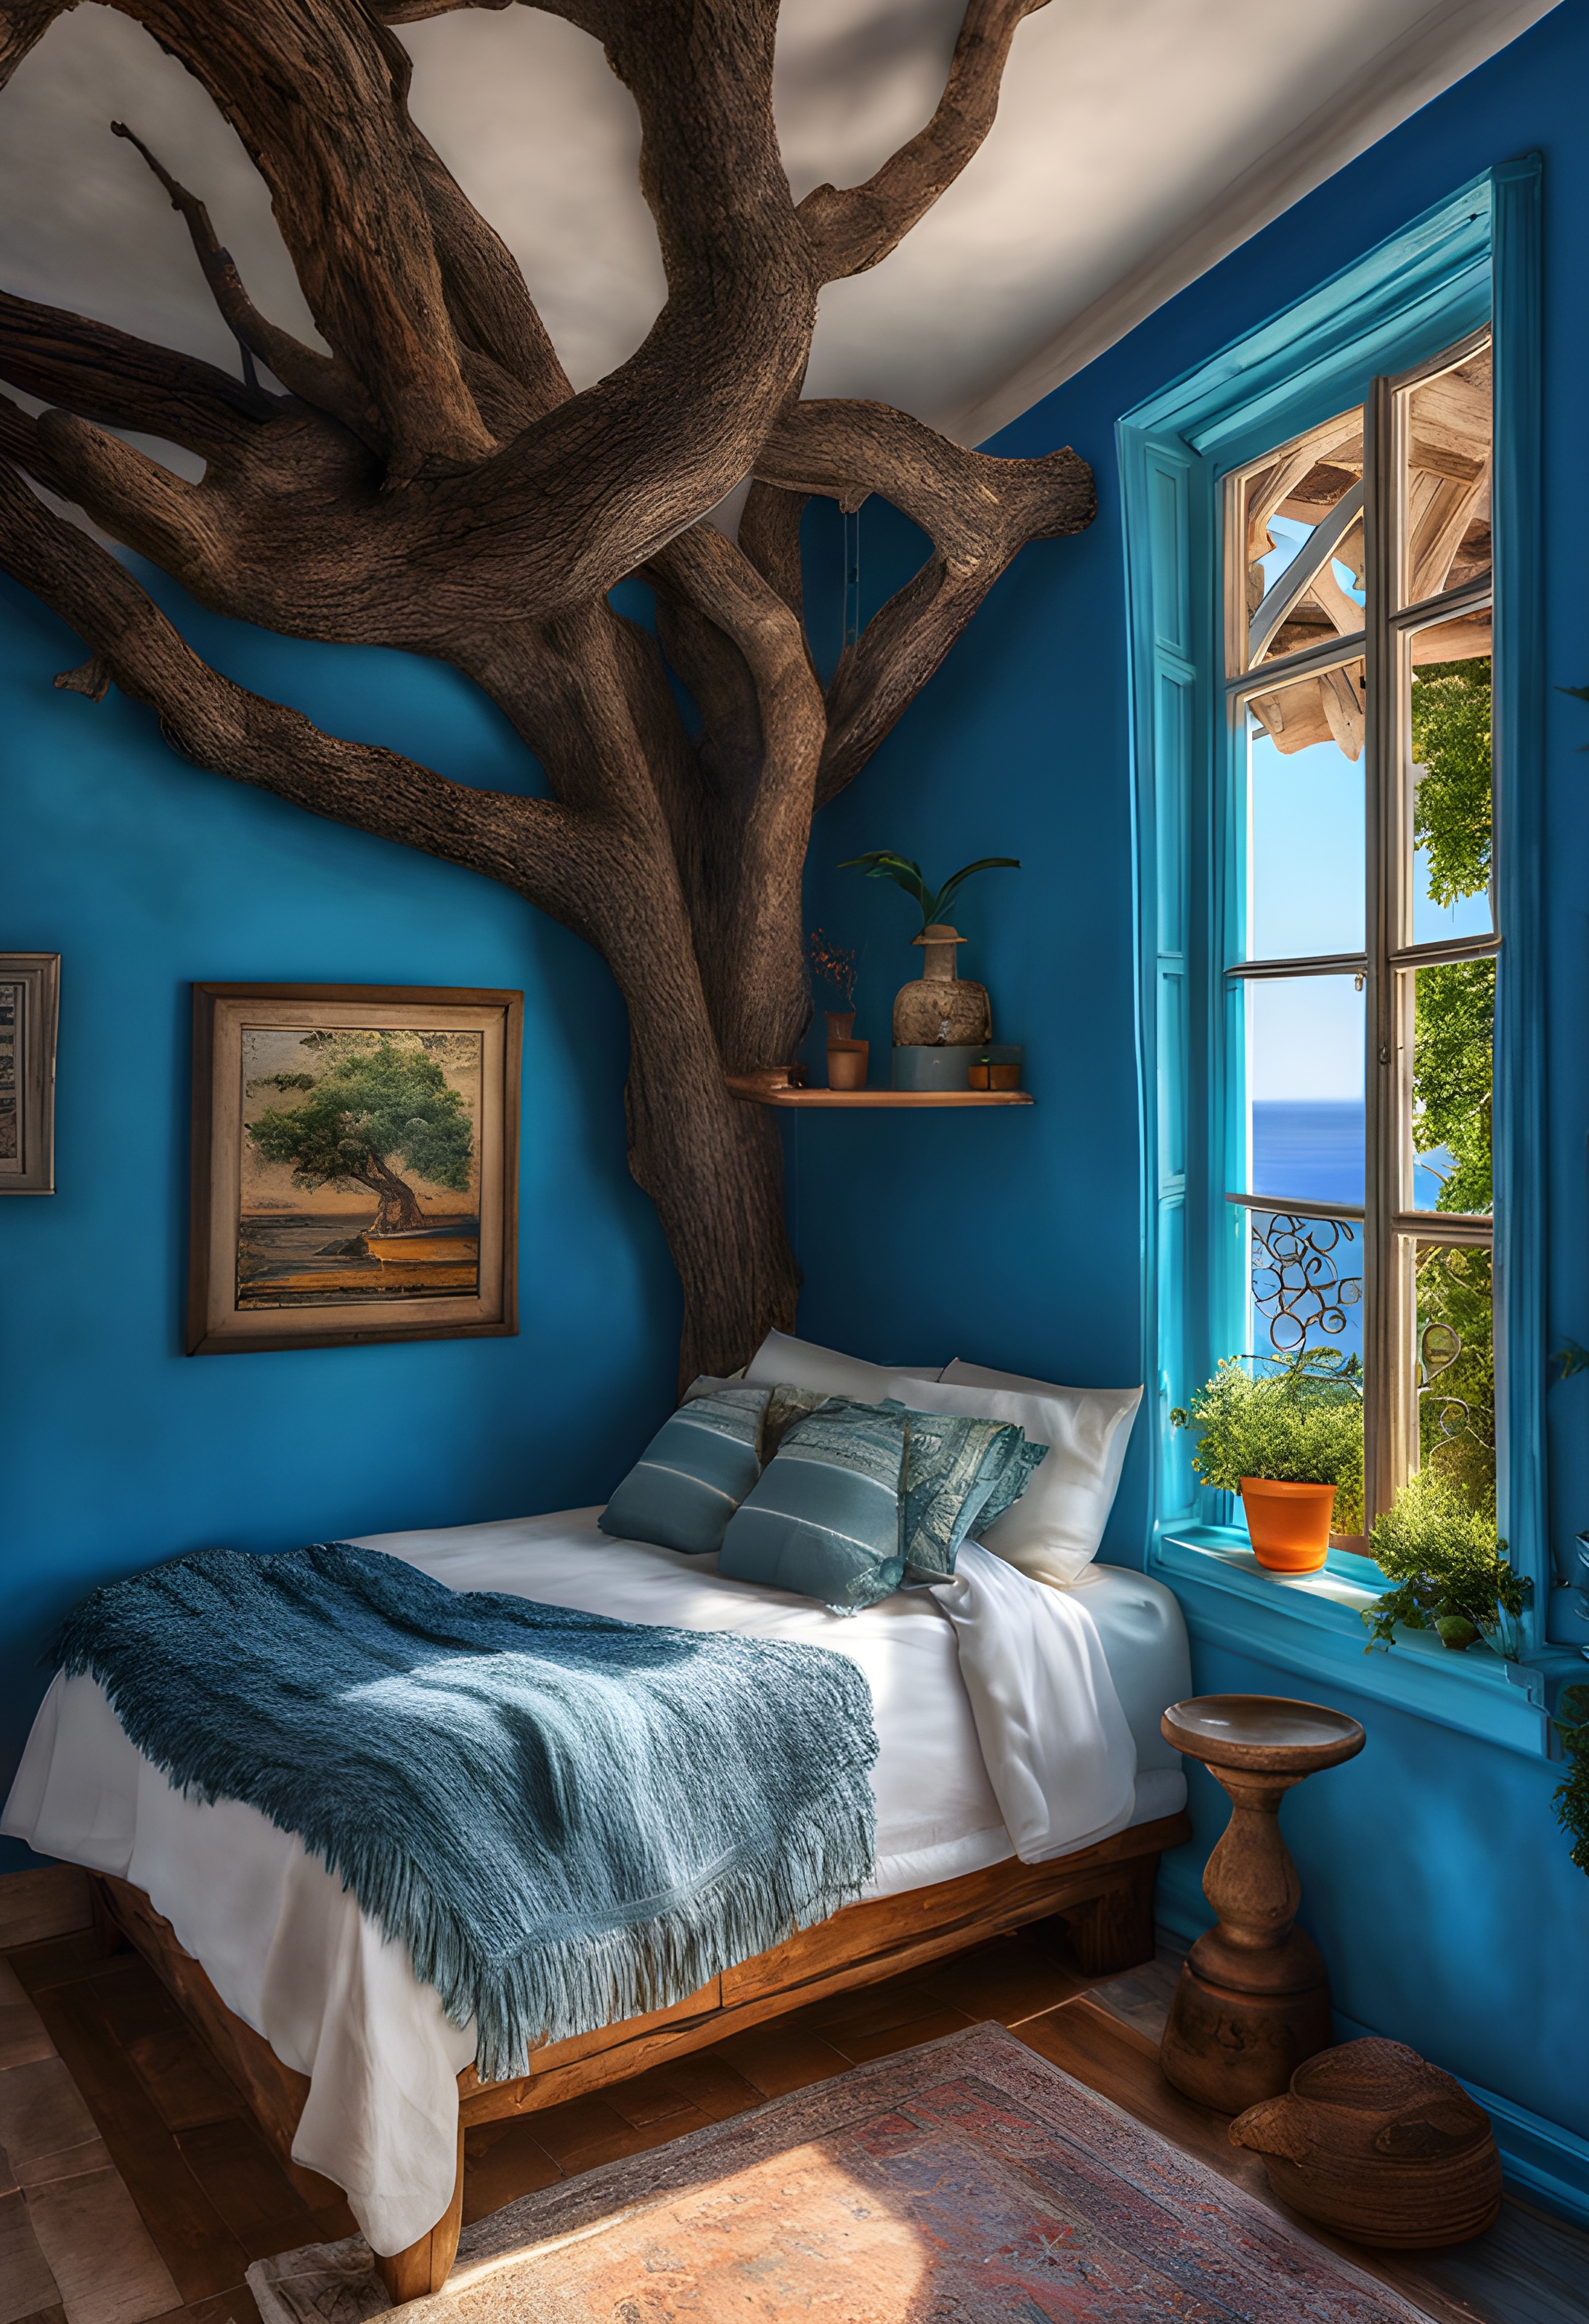 สร้างภาพ ภาพถ่าย ห้องนอนภายในบ้านสีฟ้าเมดิเตอร์เรเนียนหลังเล็กๆ แสนสบาย บ้านที่อยู่ในต้นไม้โบราณที่งอกออกมา มองเห็นวิวทะเล สมจริง